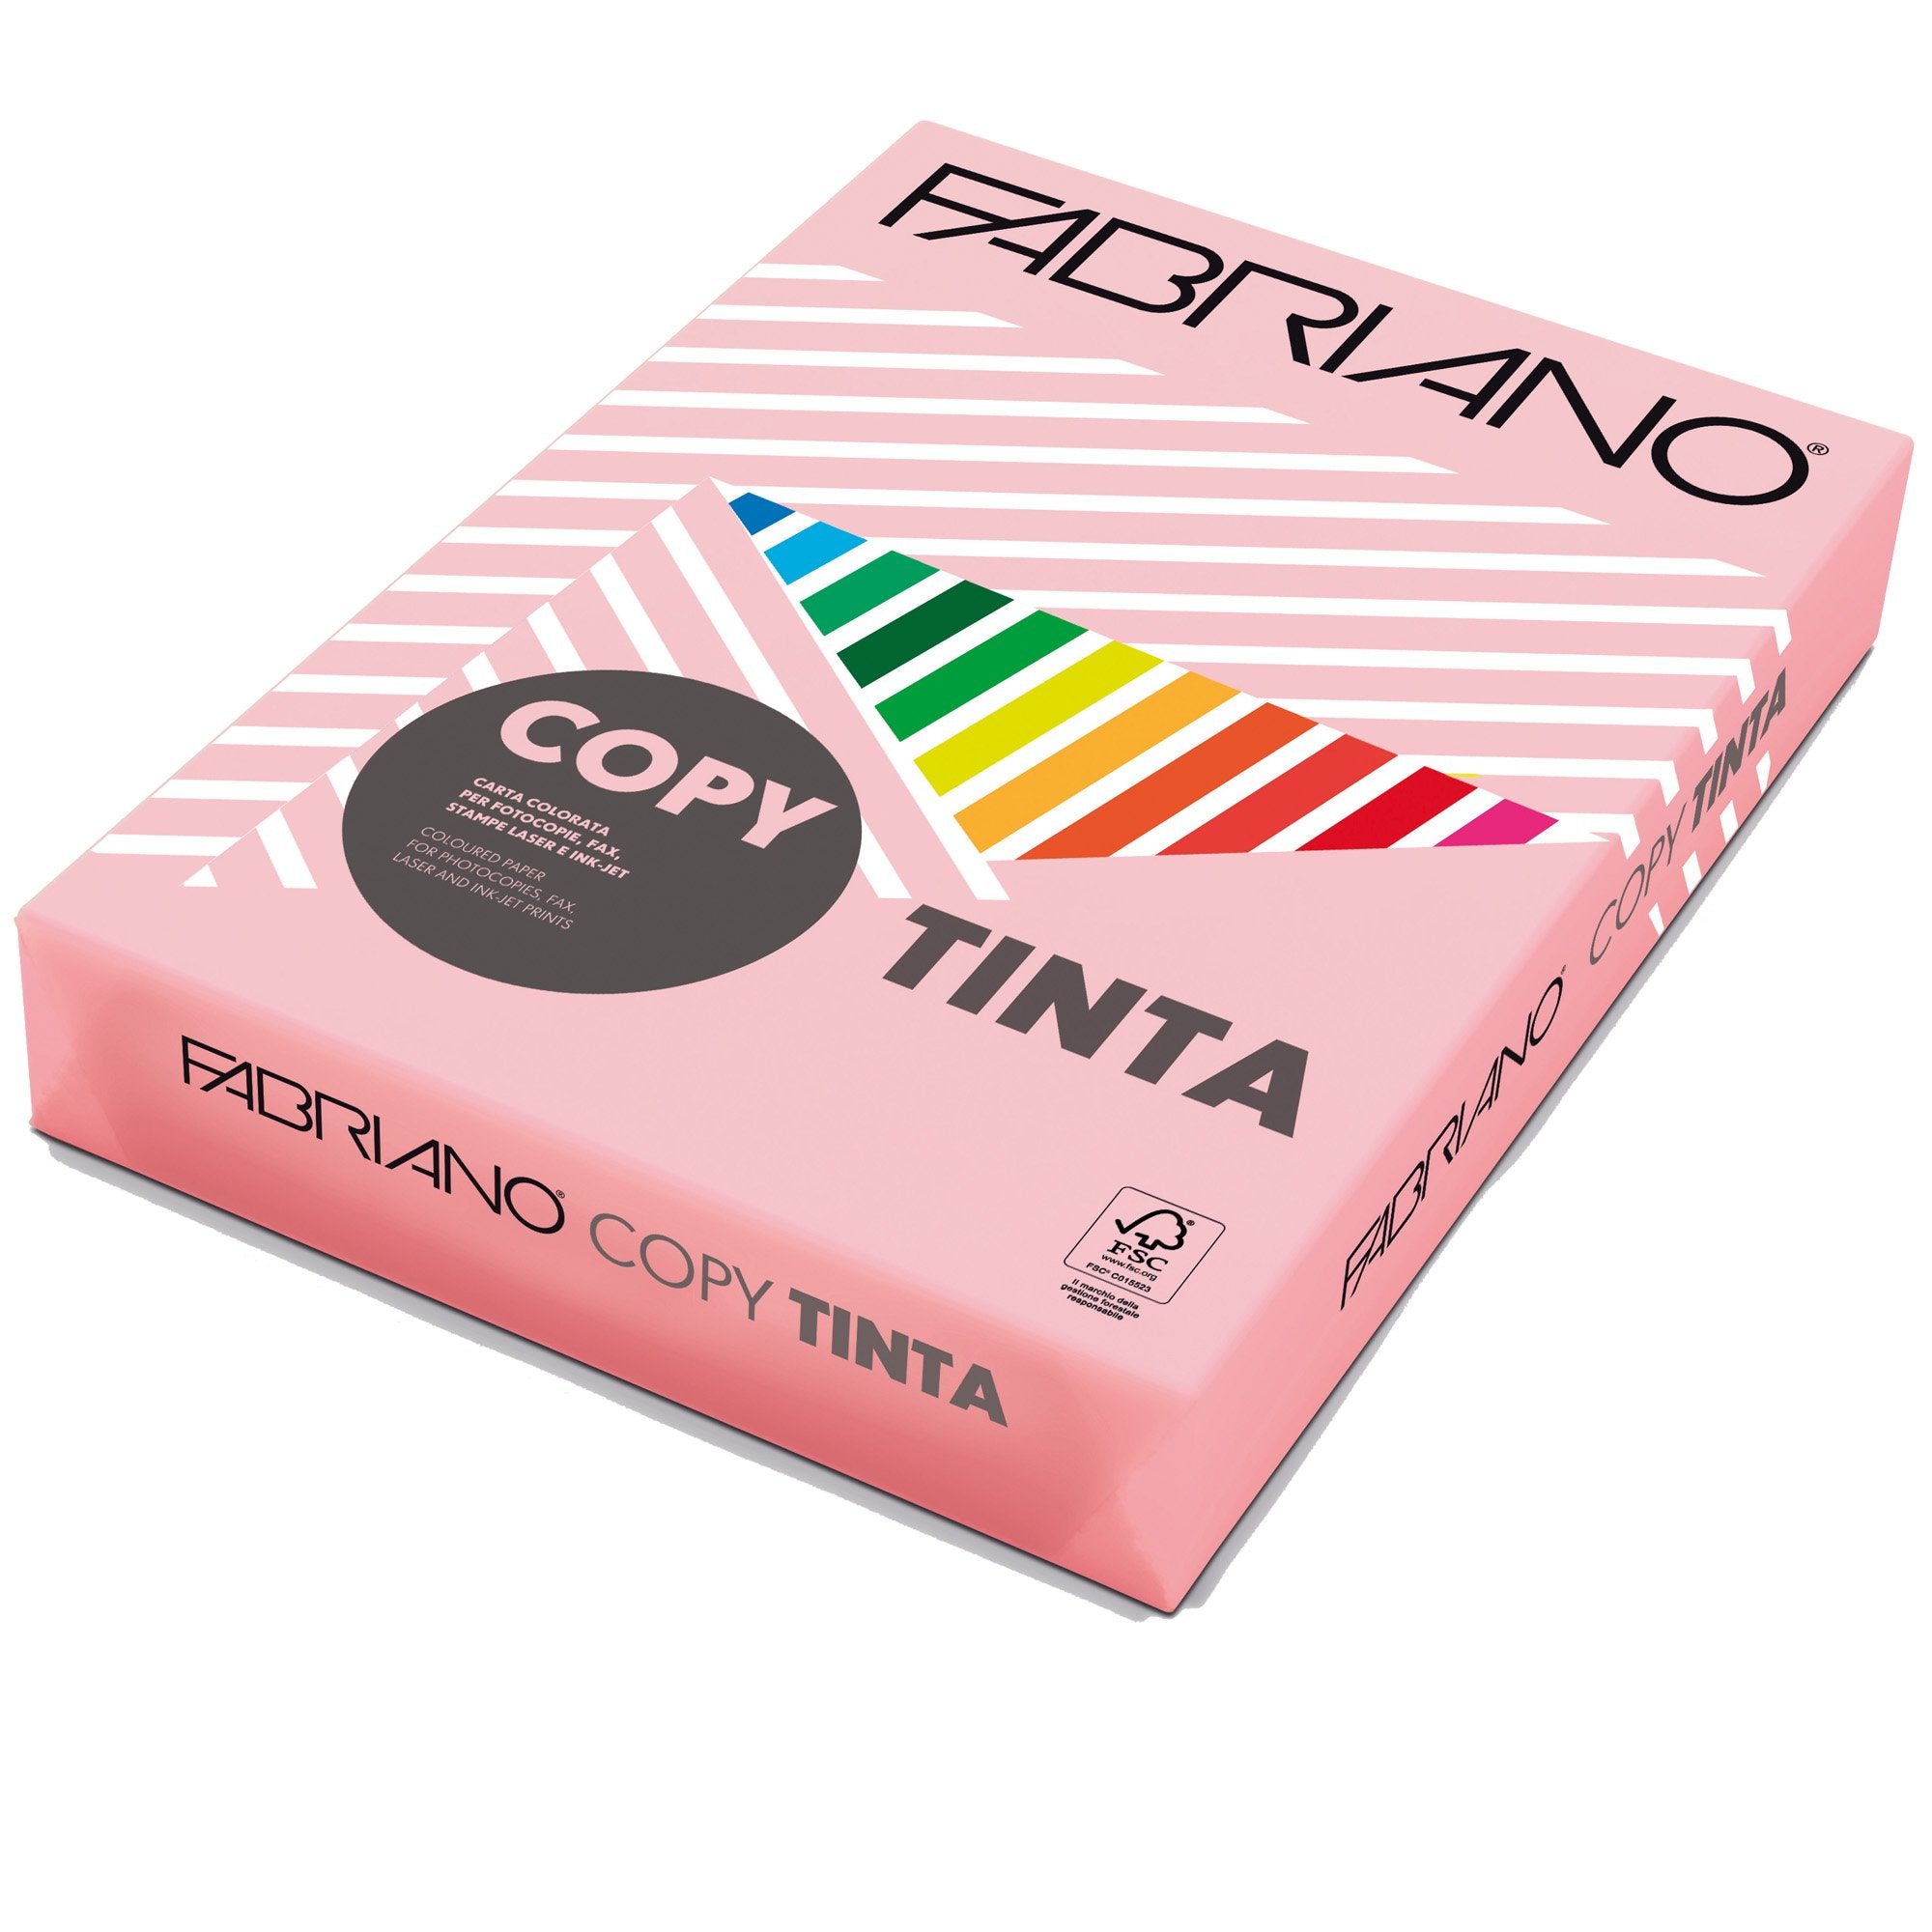 fabriano-carta-copy-tinta-a3-160gr-125fg-col-tenui-rosa